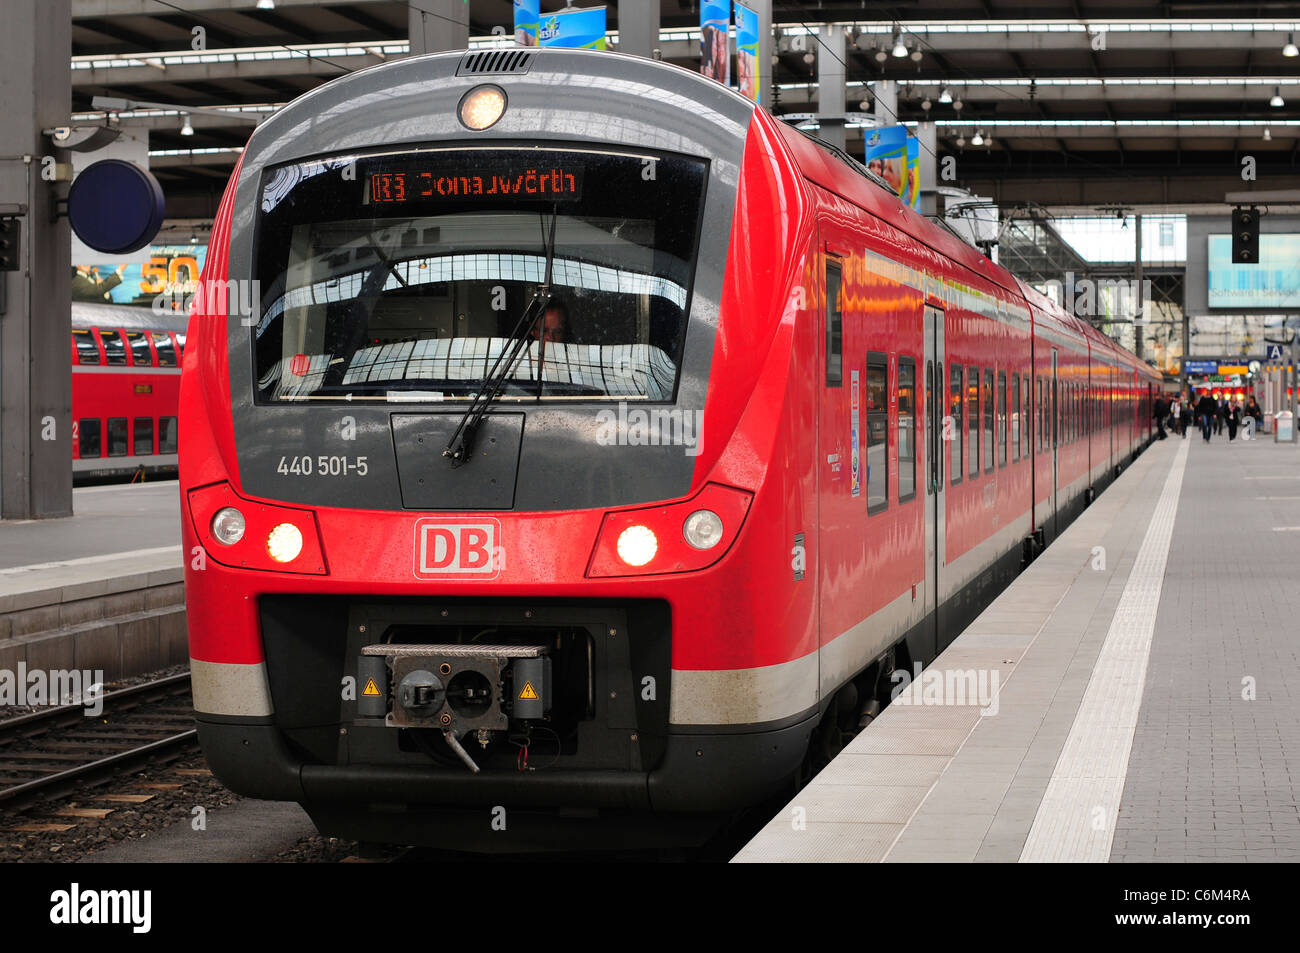 Deutsche Bahn train at München Hauptbahnhof station, Munich, Germany Stock Photo